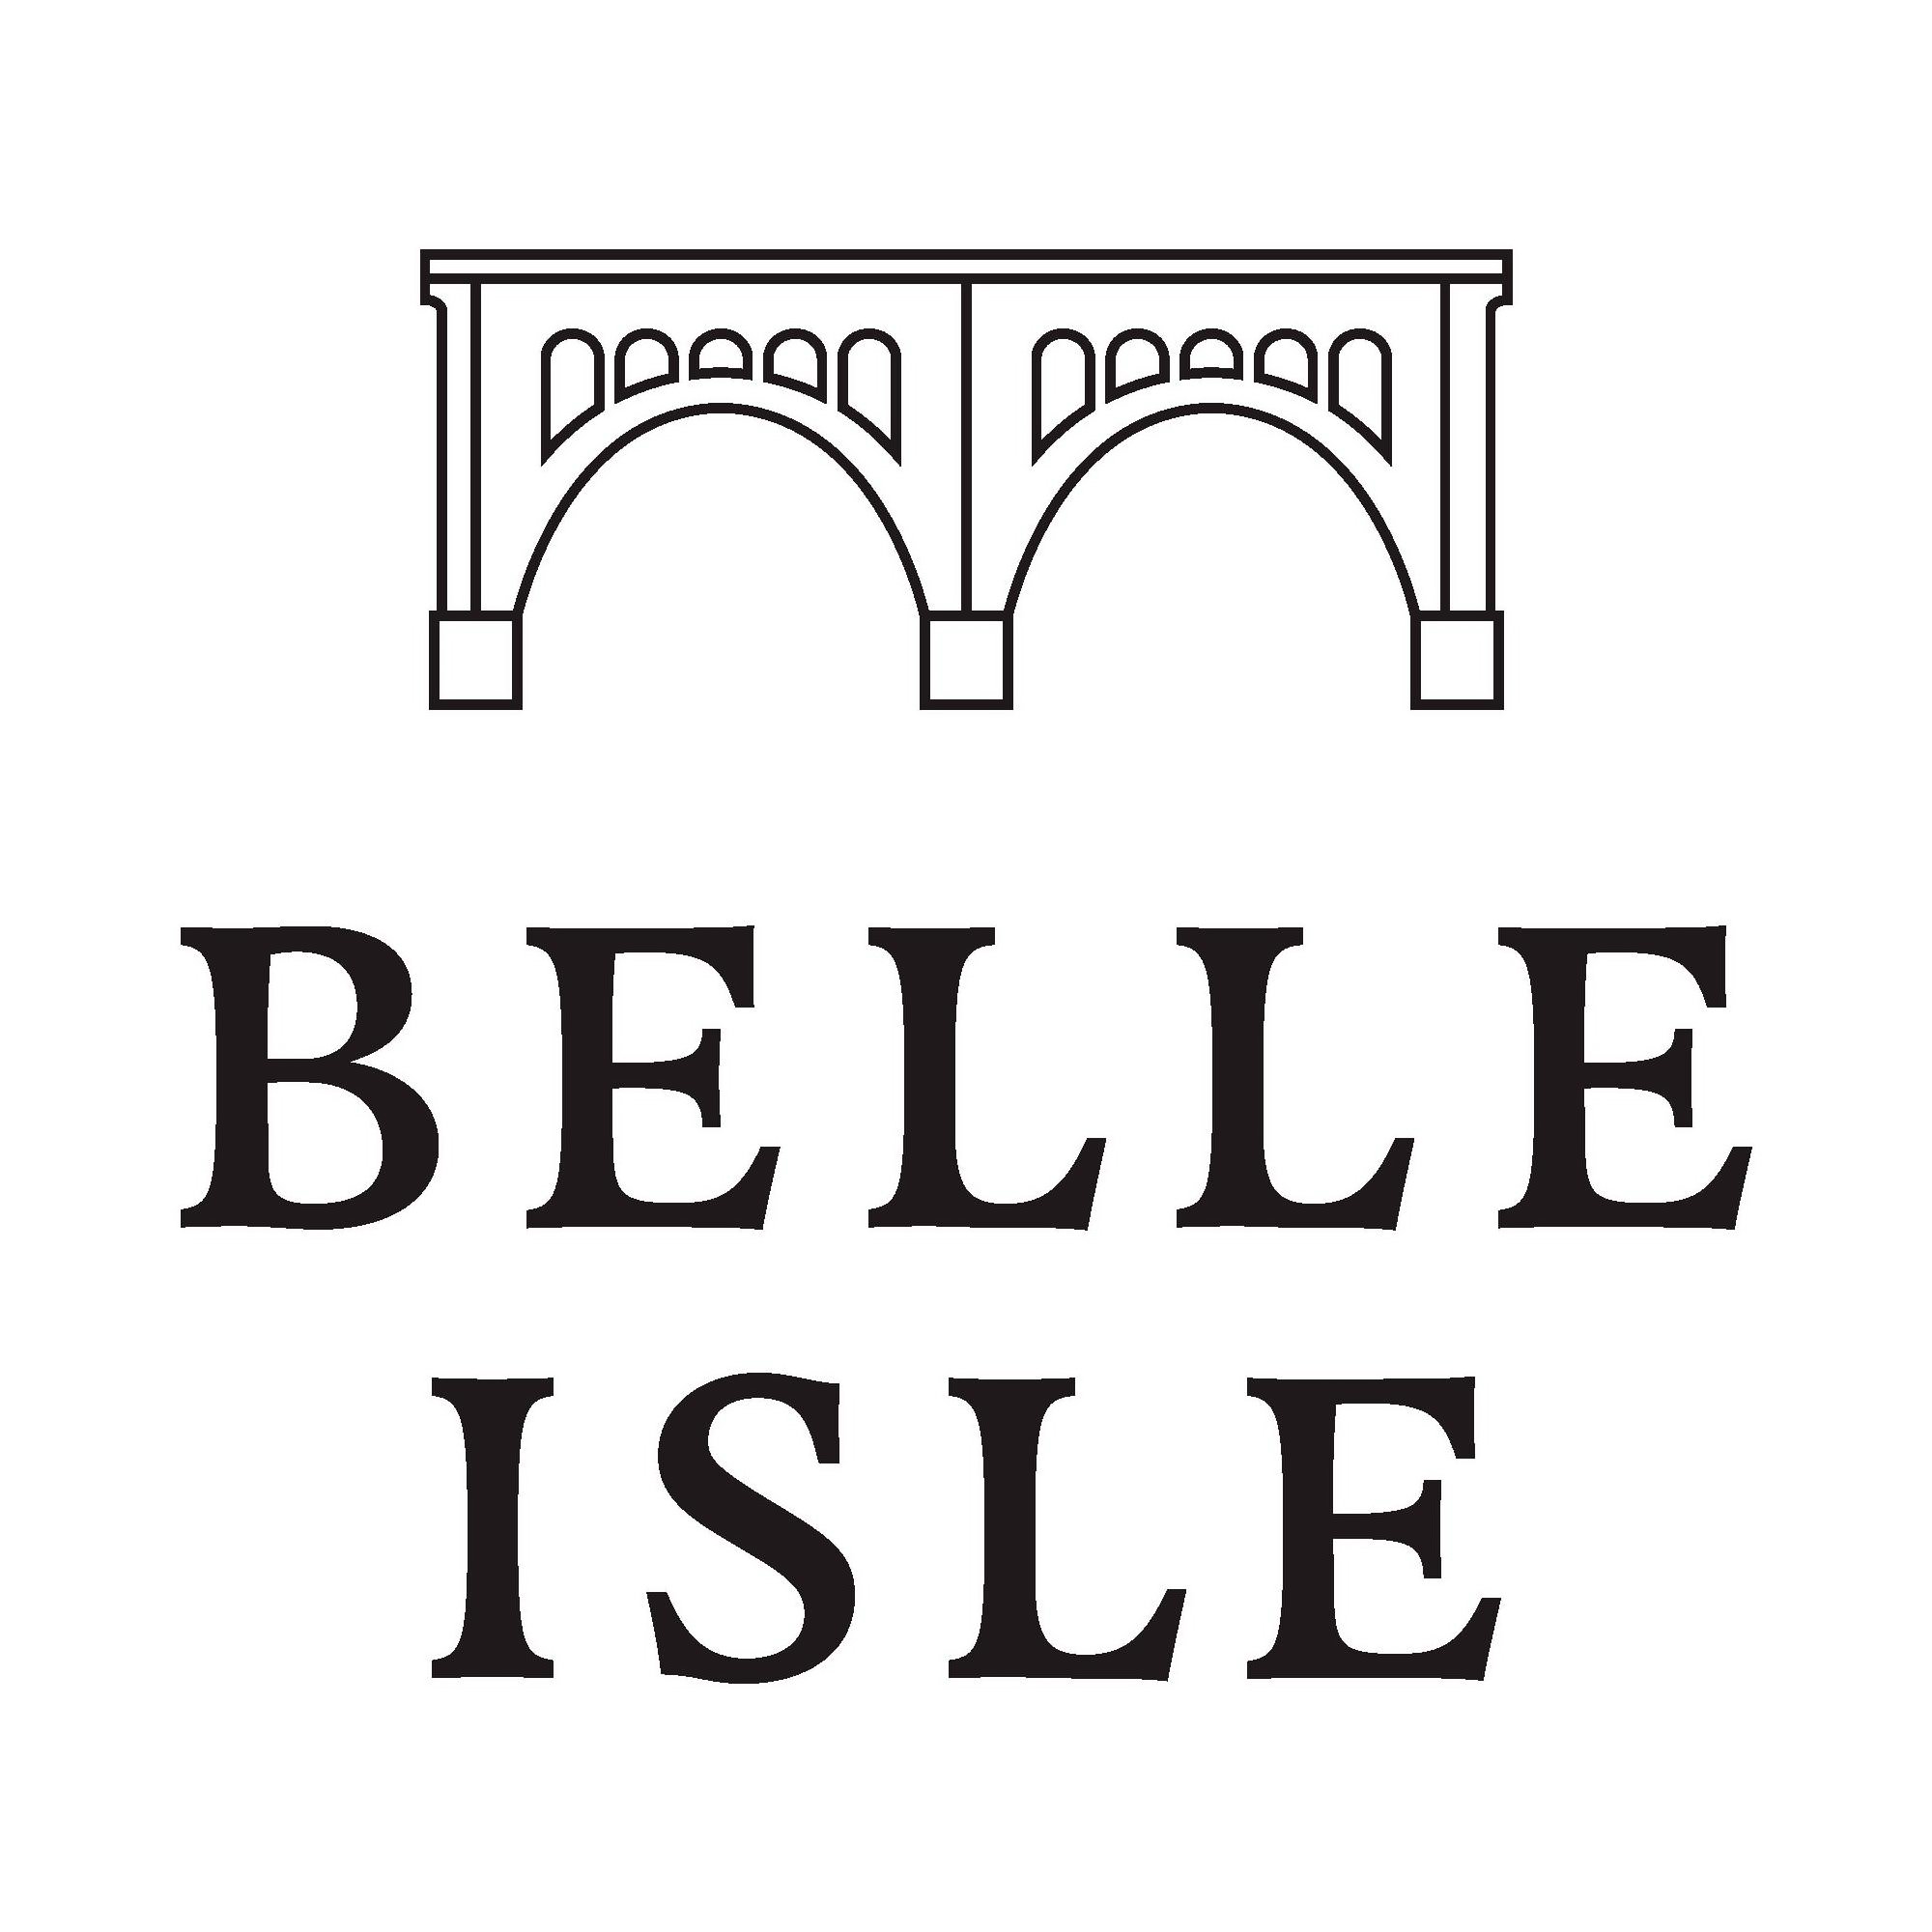 BELLE ISLE